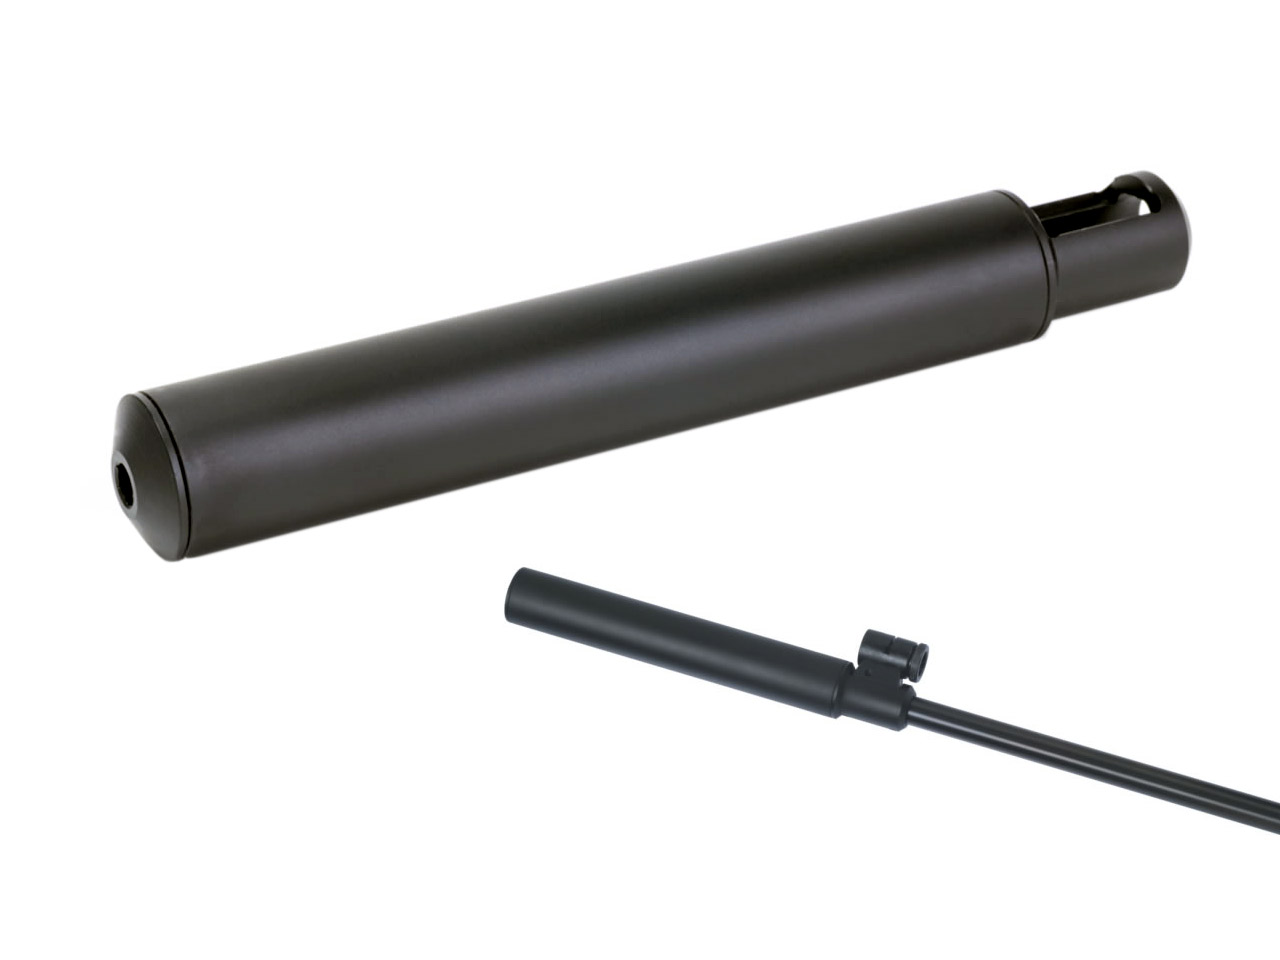 Schalldämpfer Weihrauch aufsteckbar Laufdurchmesser 15 mm für Luftgewehr Weihrauch HW30 HW35 HW50 Kaliber 6,35 mm (P18)